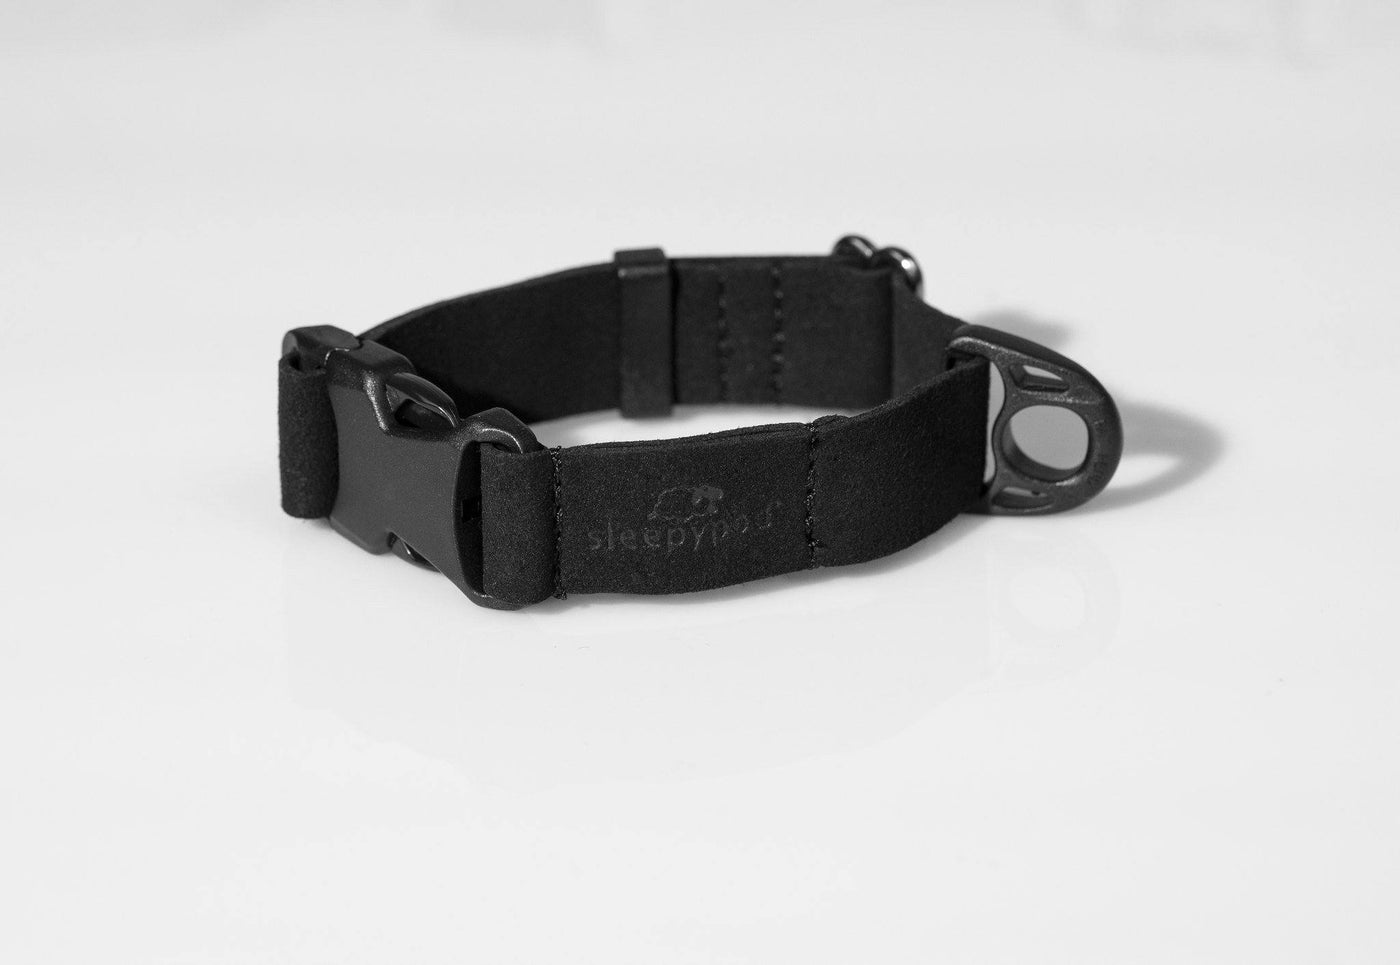 Sleepypod Comfort Suede Dog Collar Collar Sleepypod Black XS 